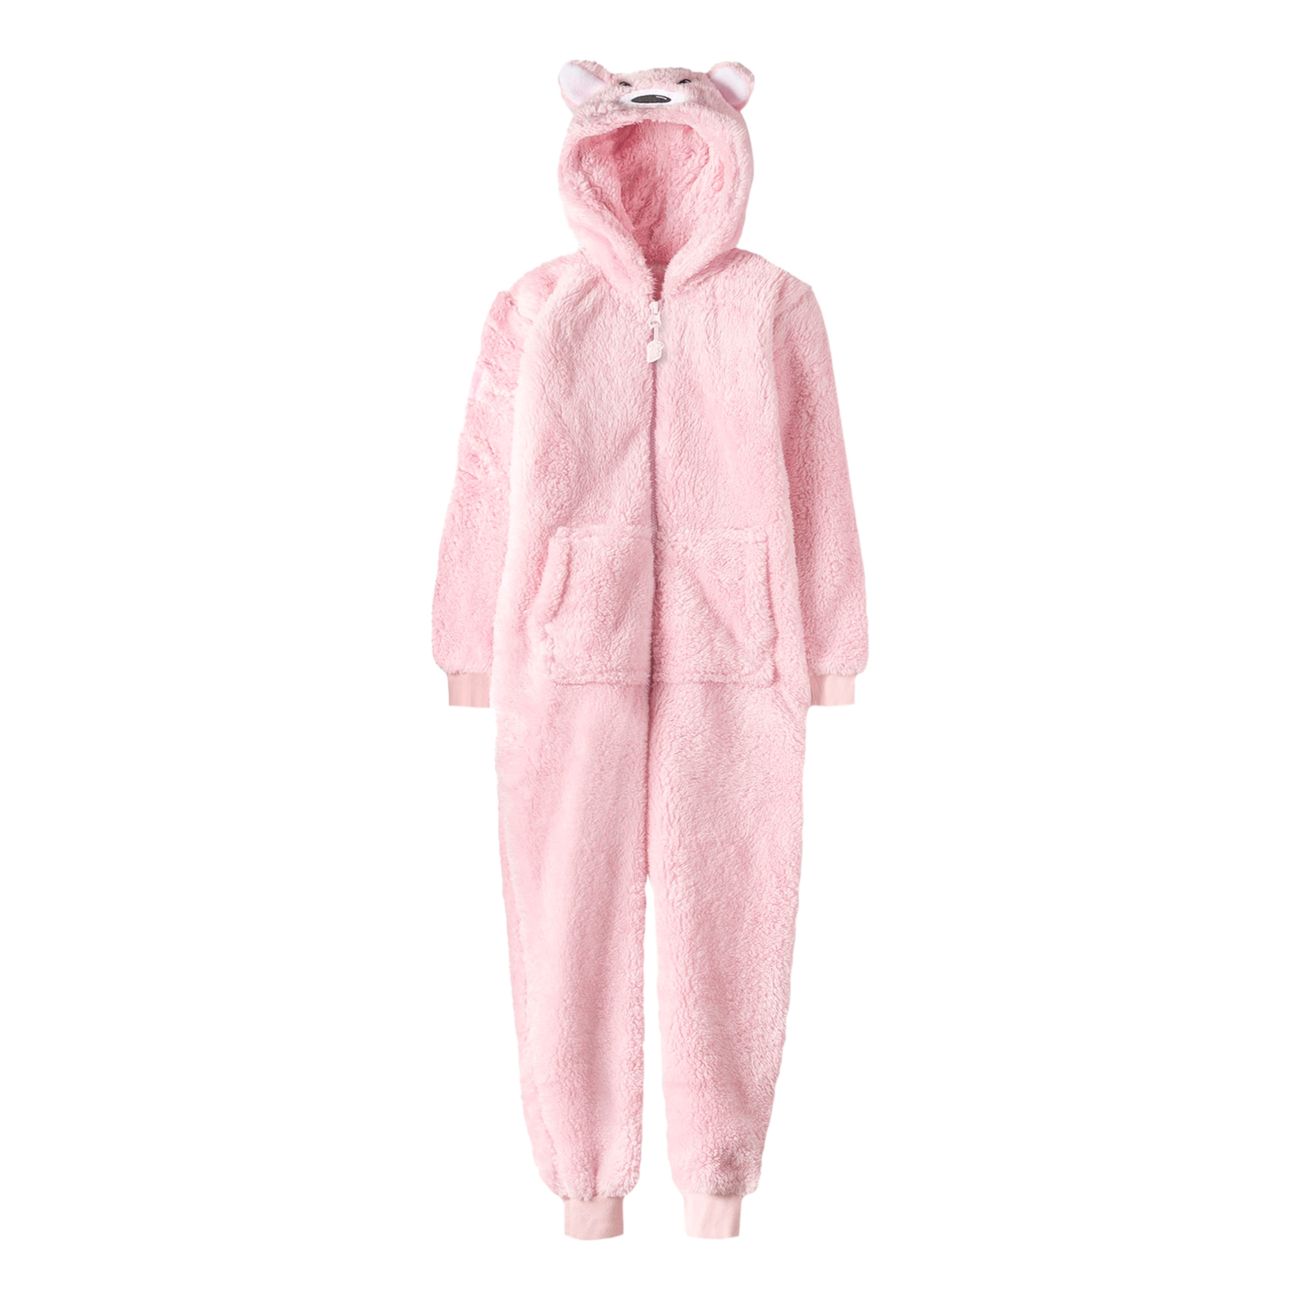 rosa-bjorn-onesie-for-barn-90715-1